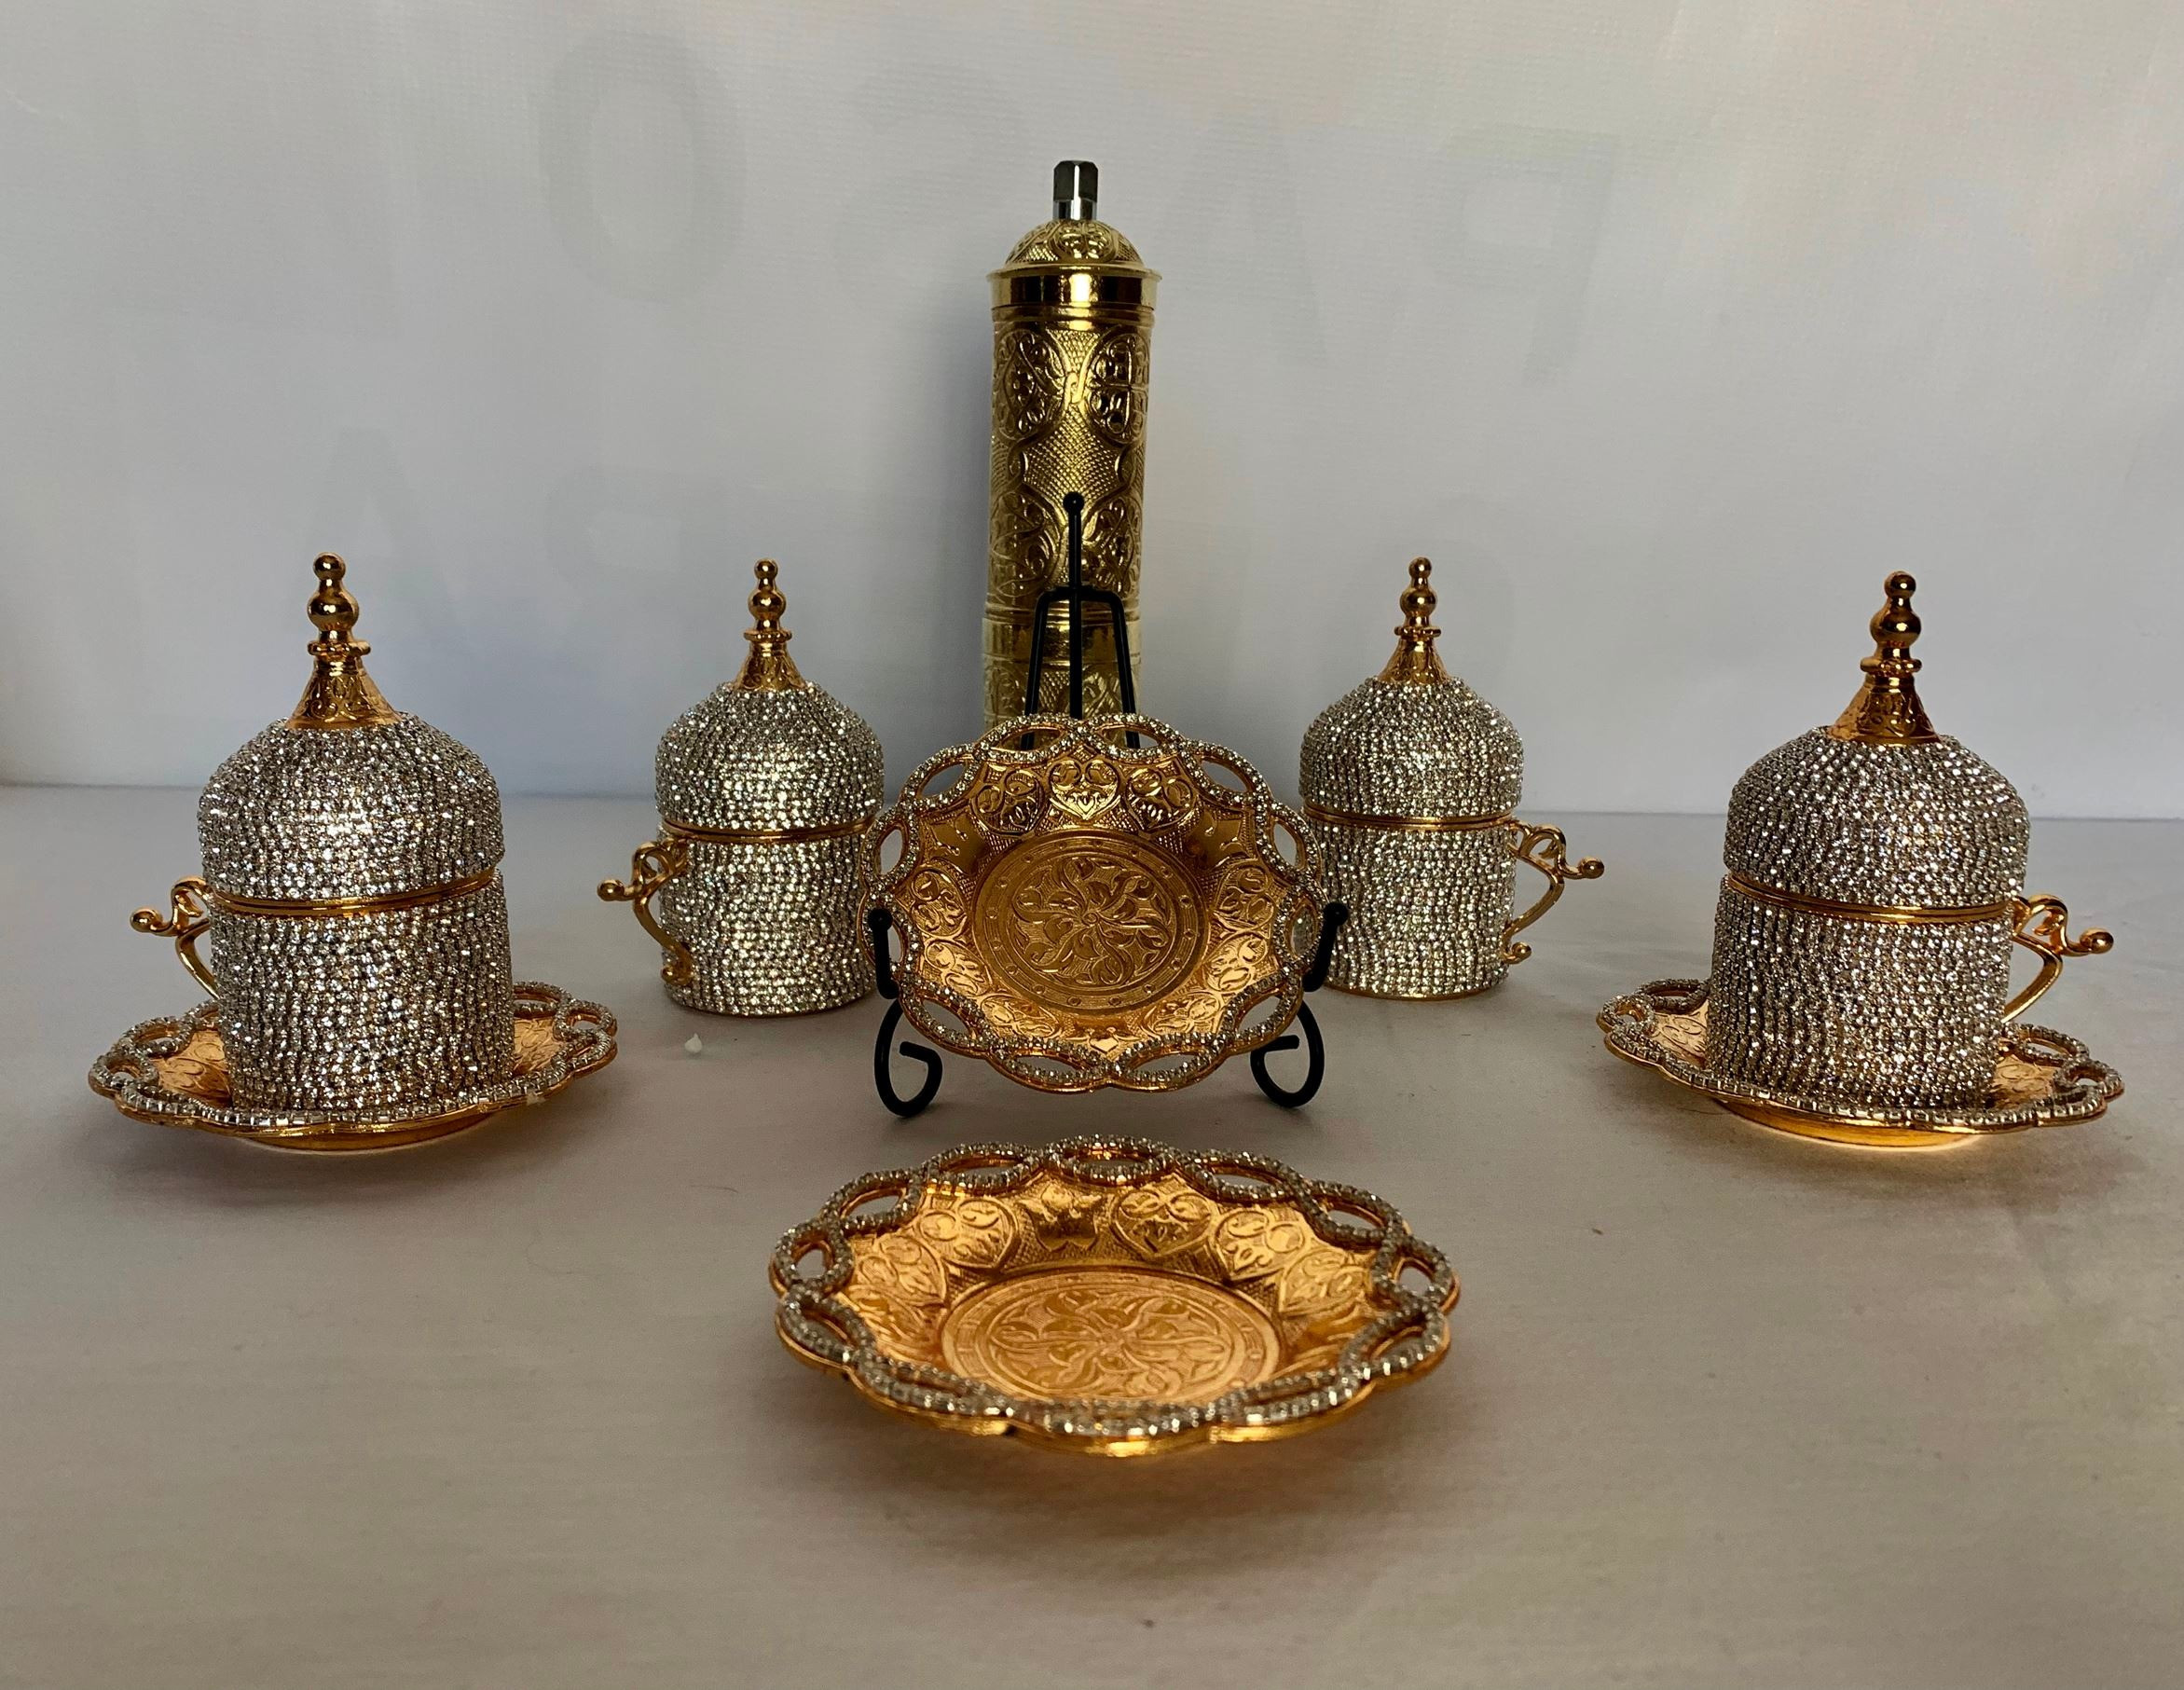 Bejeweled Turkish Cup & Grinder Set